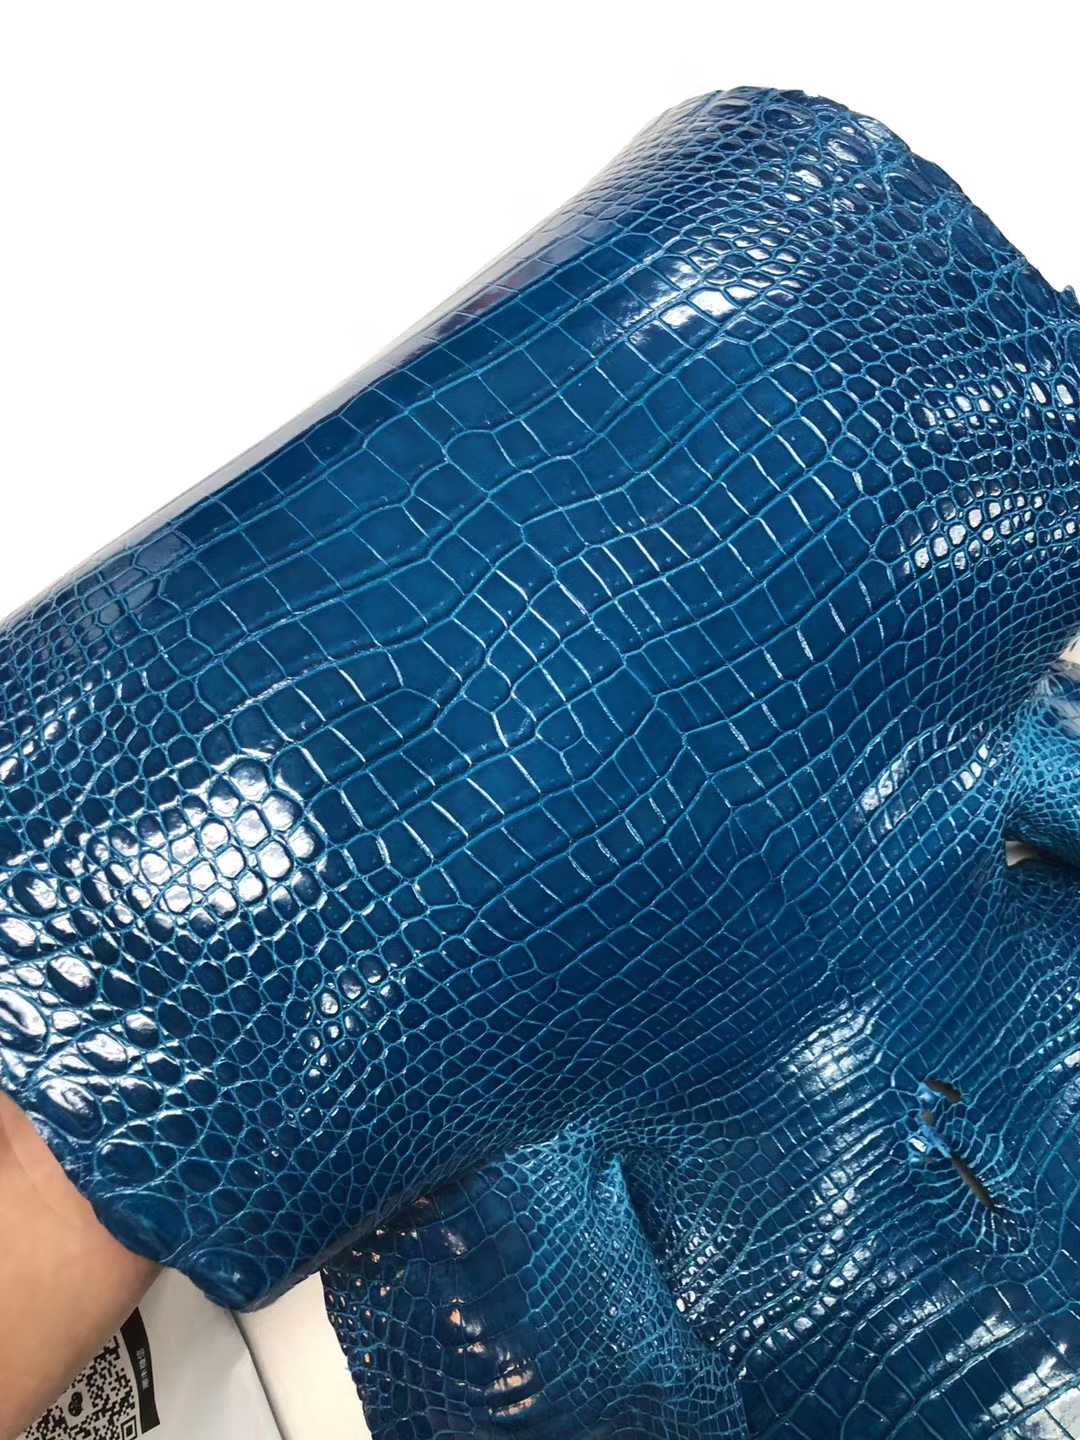 Hermes Kelly/Birkin Bags Customize 7W Blue Izmir Porosus Shiny Crocodile Leather